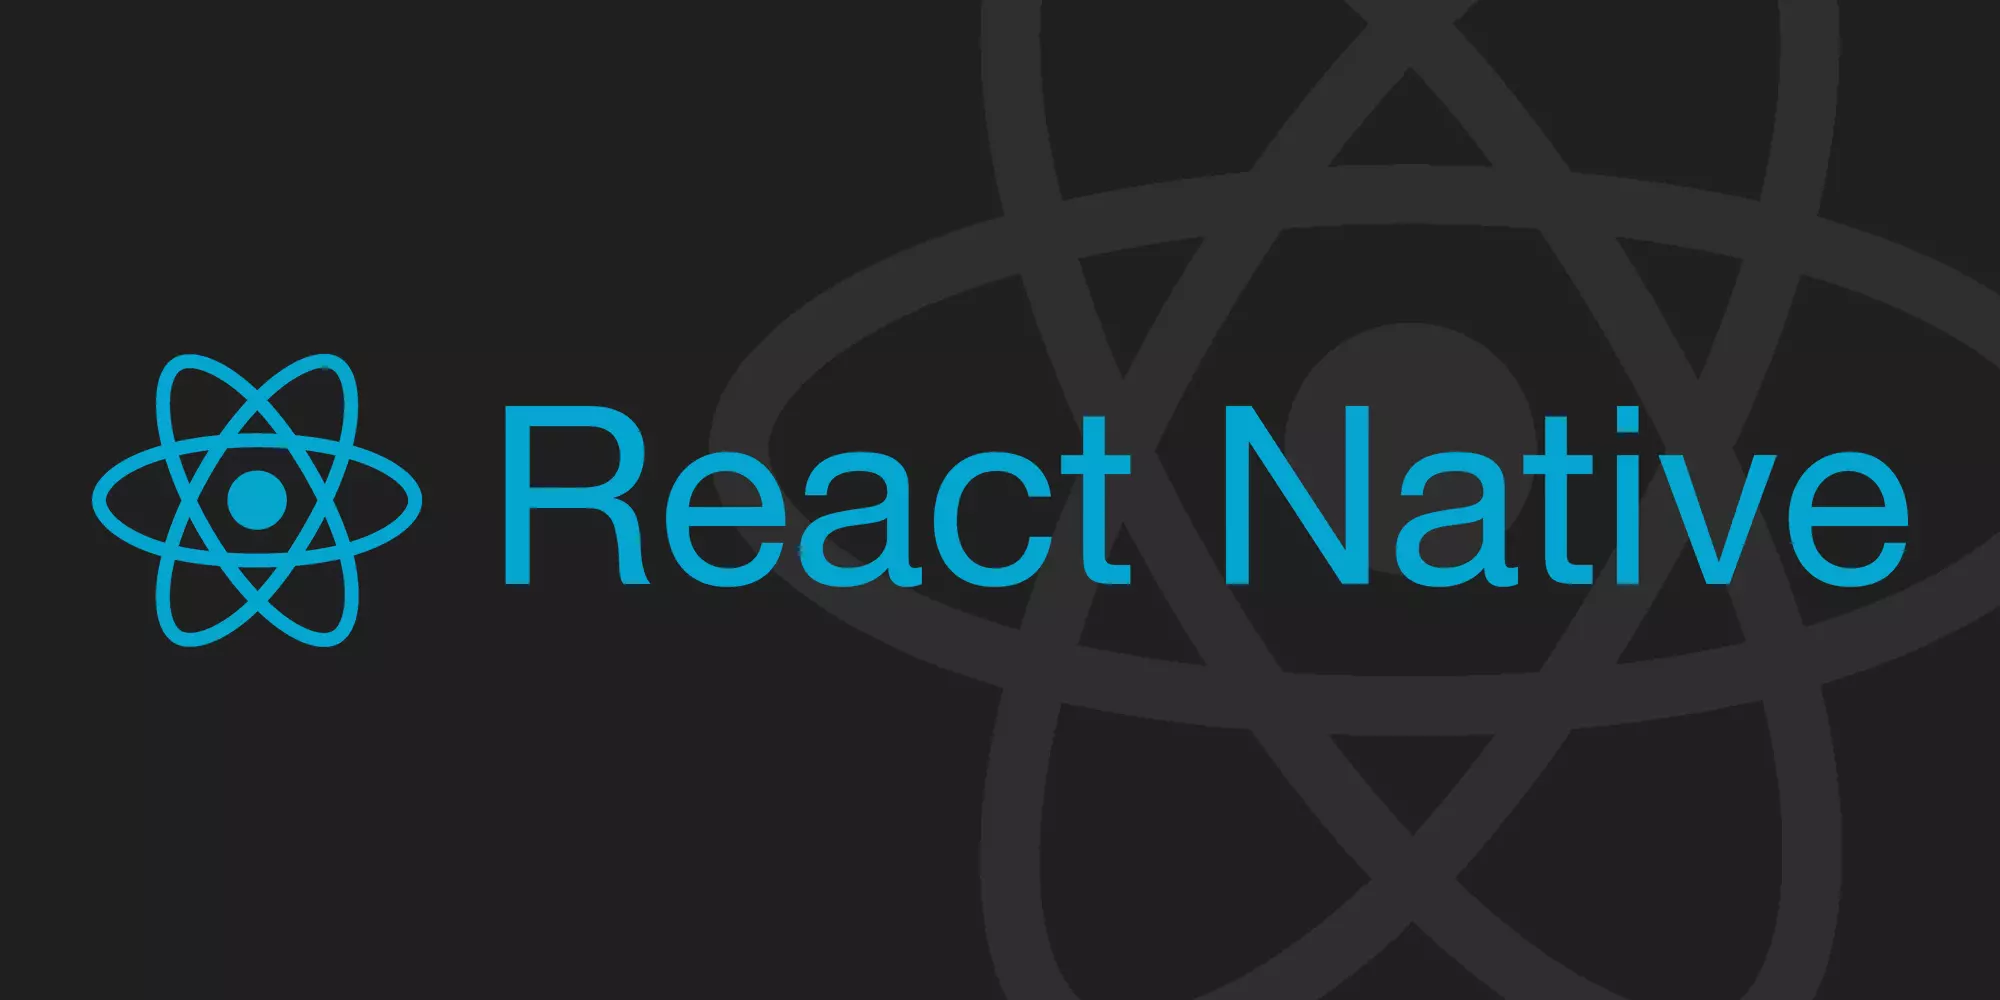 React Native là gì